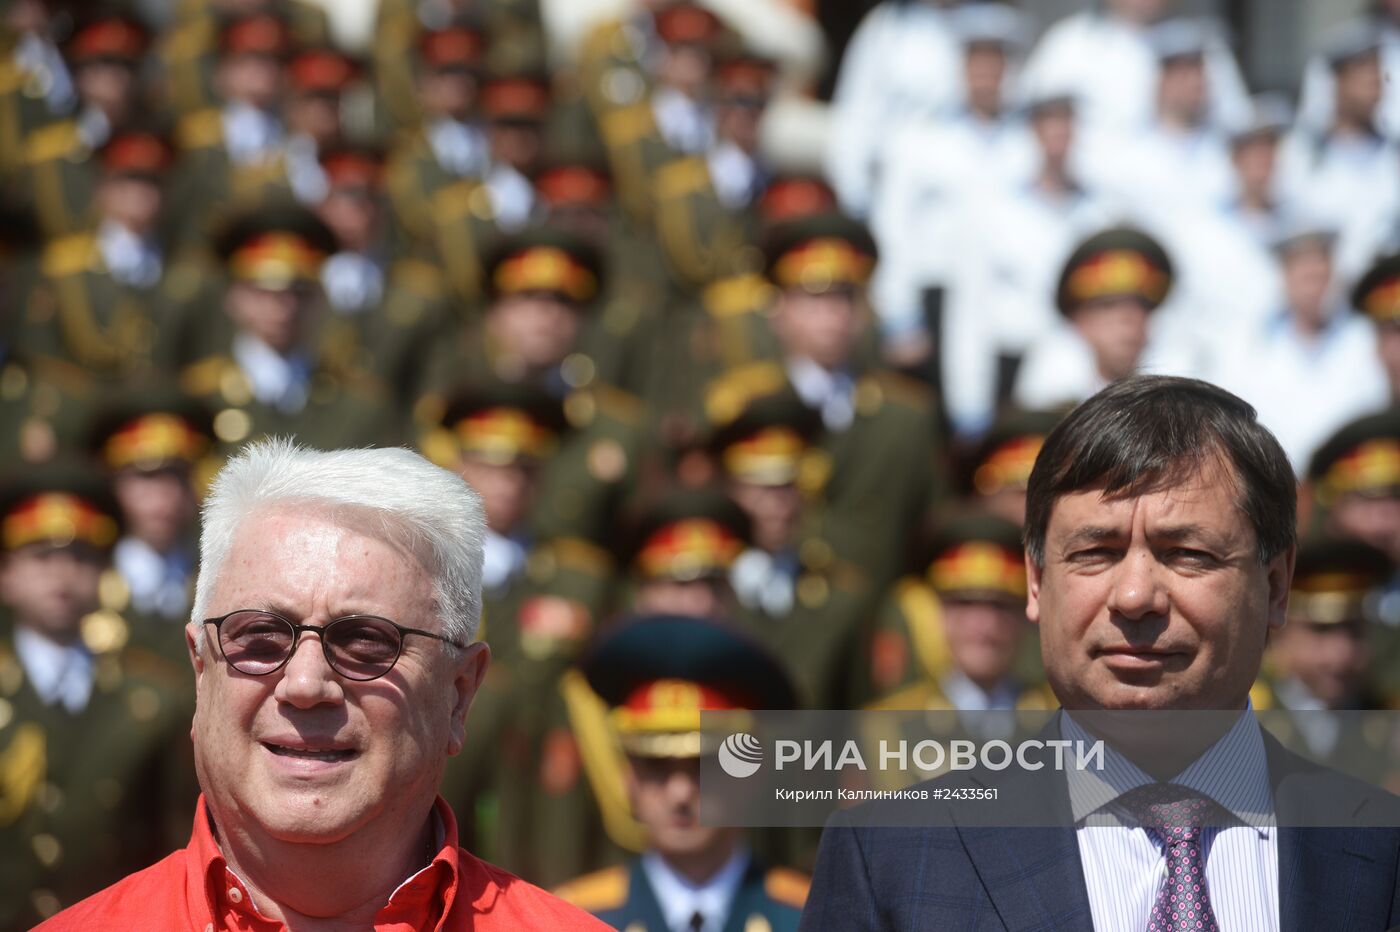 Выступление сводного хора ансамблей Вооруженных сил РФ на Суворовской площади